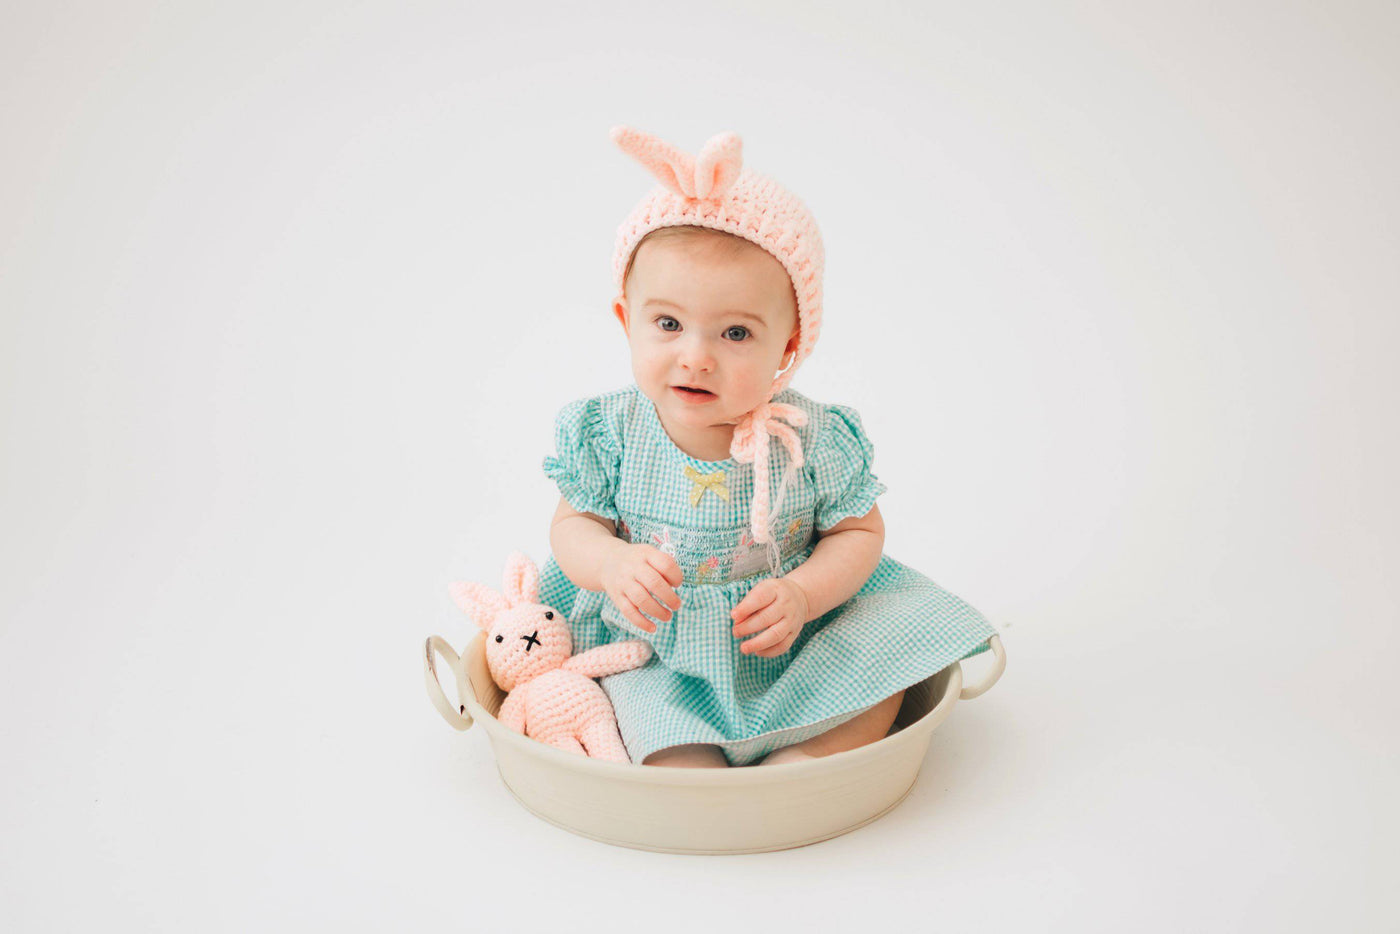 Pink Newborn Bunny Hat and Stuffed Rabbit Plush - Beautiful Photo Props